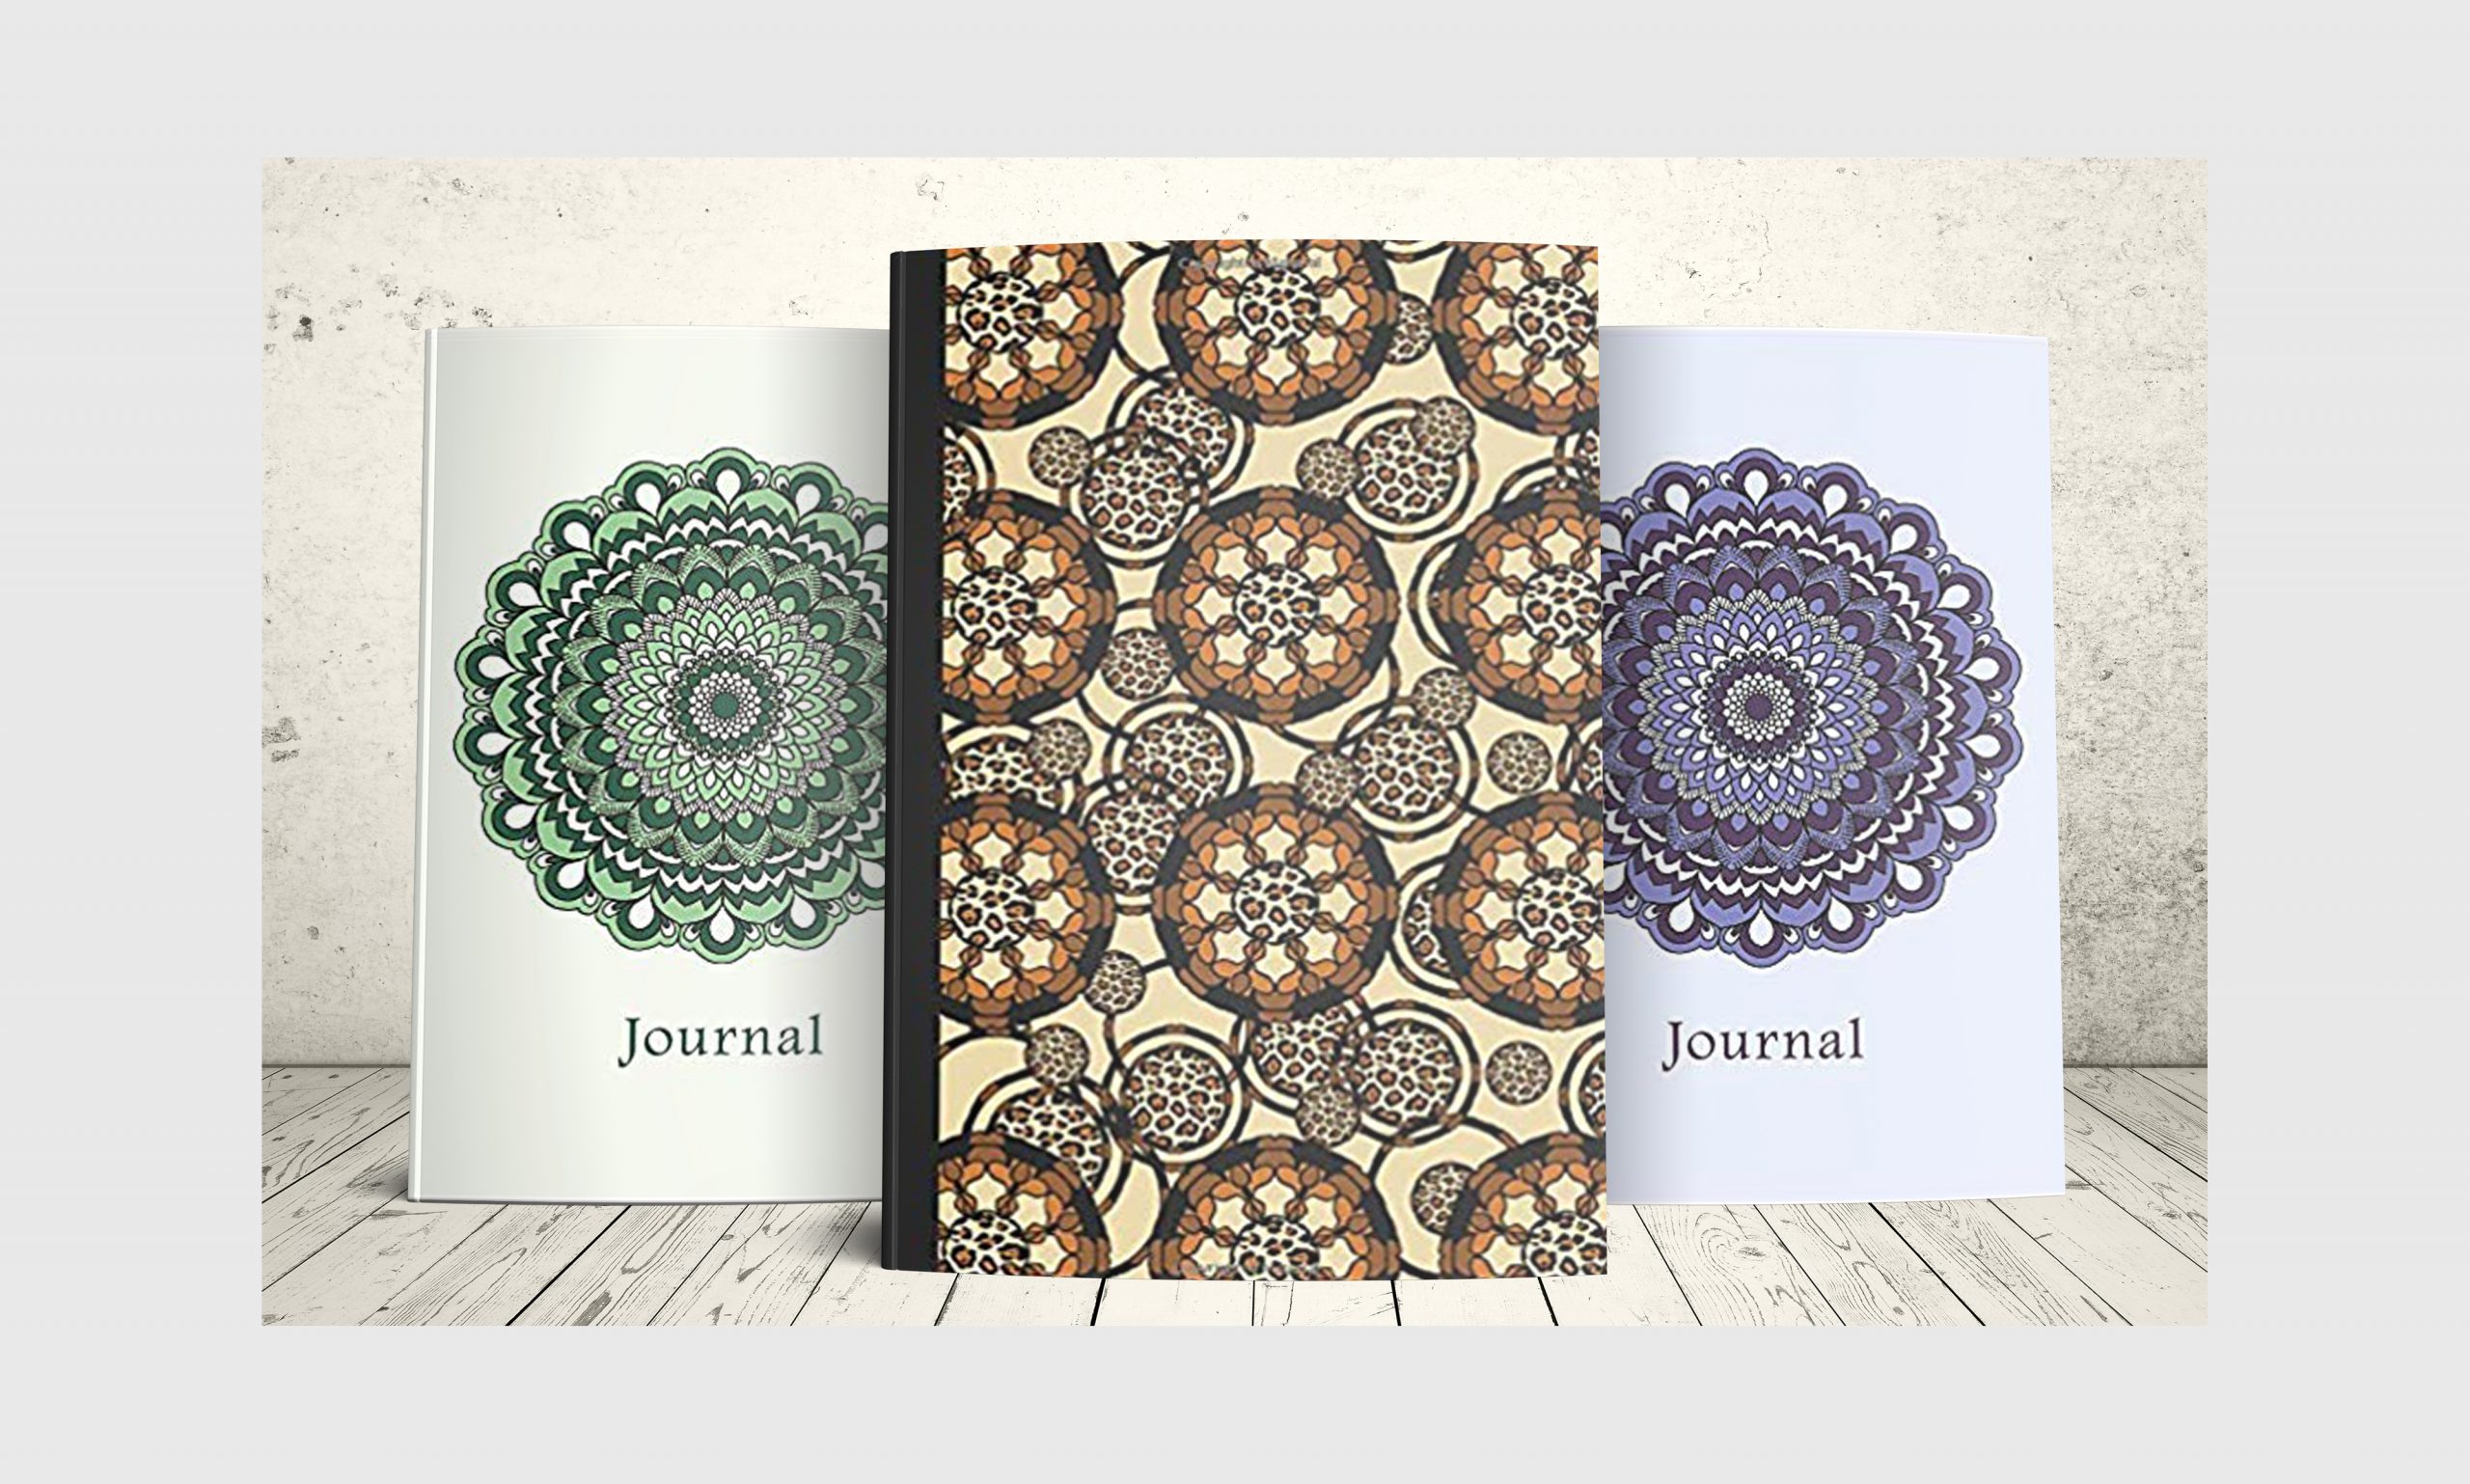 Three mandala journals